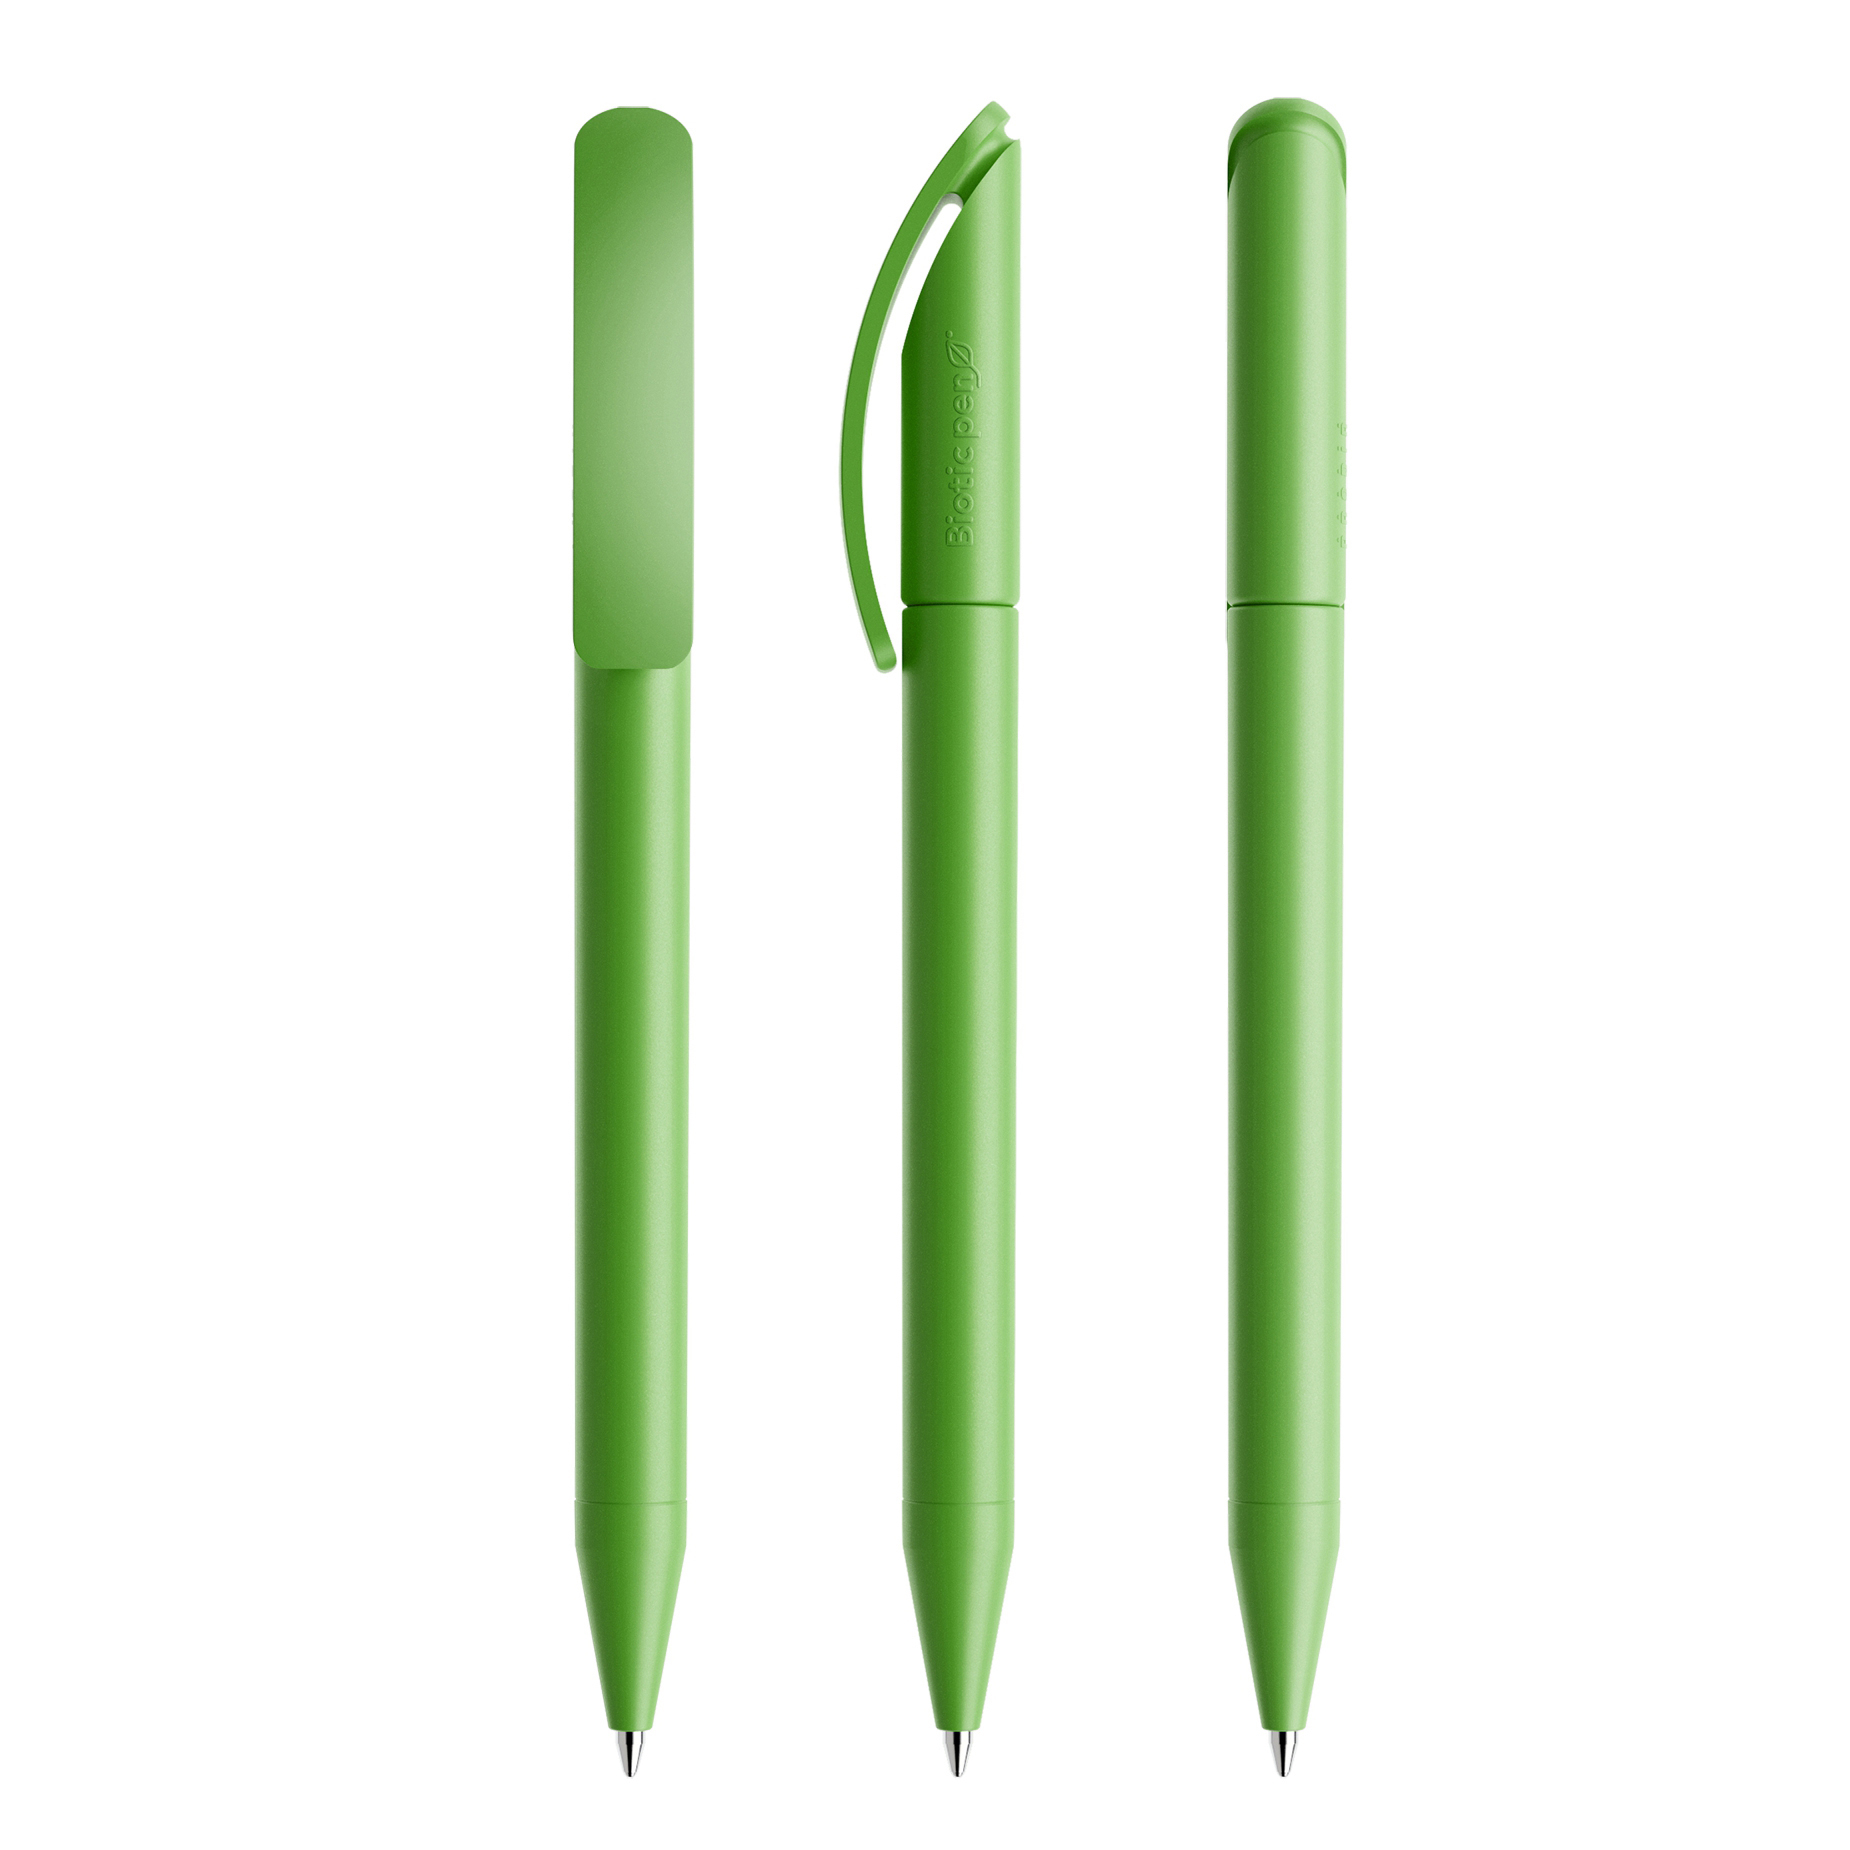 DS3 Biotic pen in green